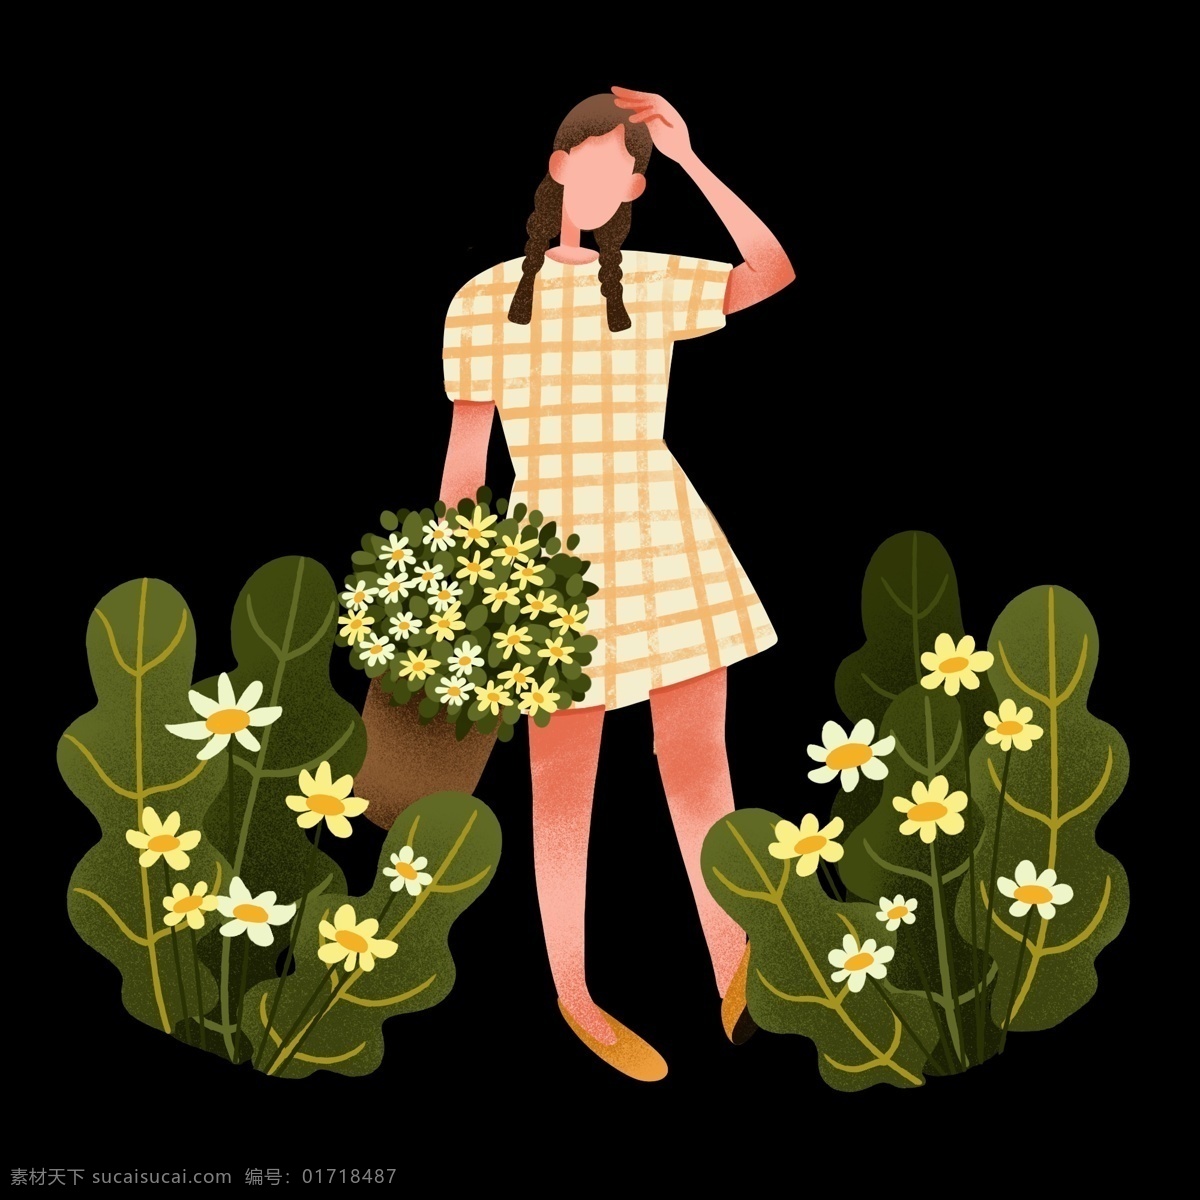 踏青 公园 采花 女孩 春游 人物 插画 绿色叶子 卡通人物 植物装饰 穿 黄 格子 裙